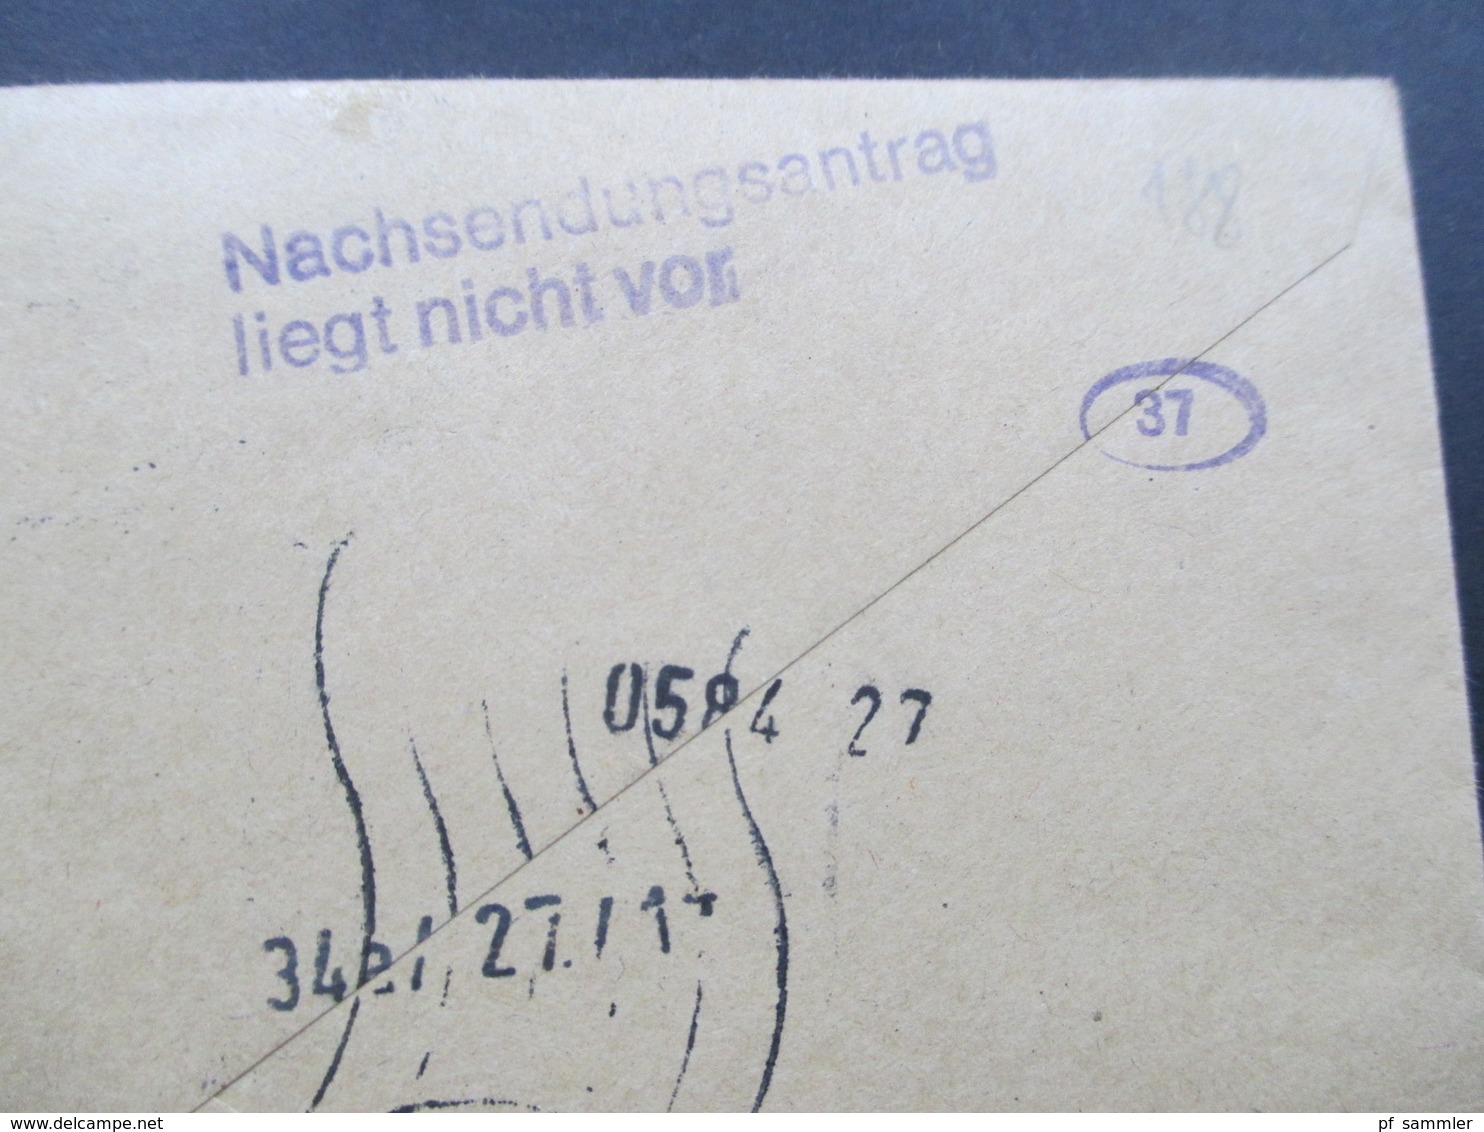 Berlin 1977 Eilbrief Mit Berlin ZD 4x W43 Als 12er Block Aus MHB. Viele Stempel! Nachsendeantrag Liegt Nicht Vor. - Storia Postale